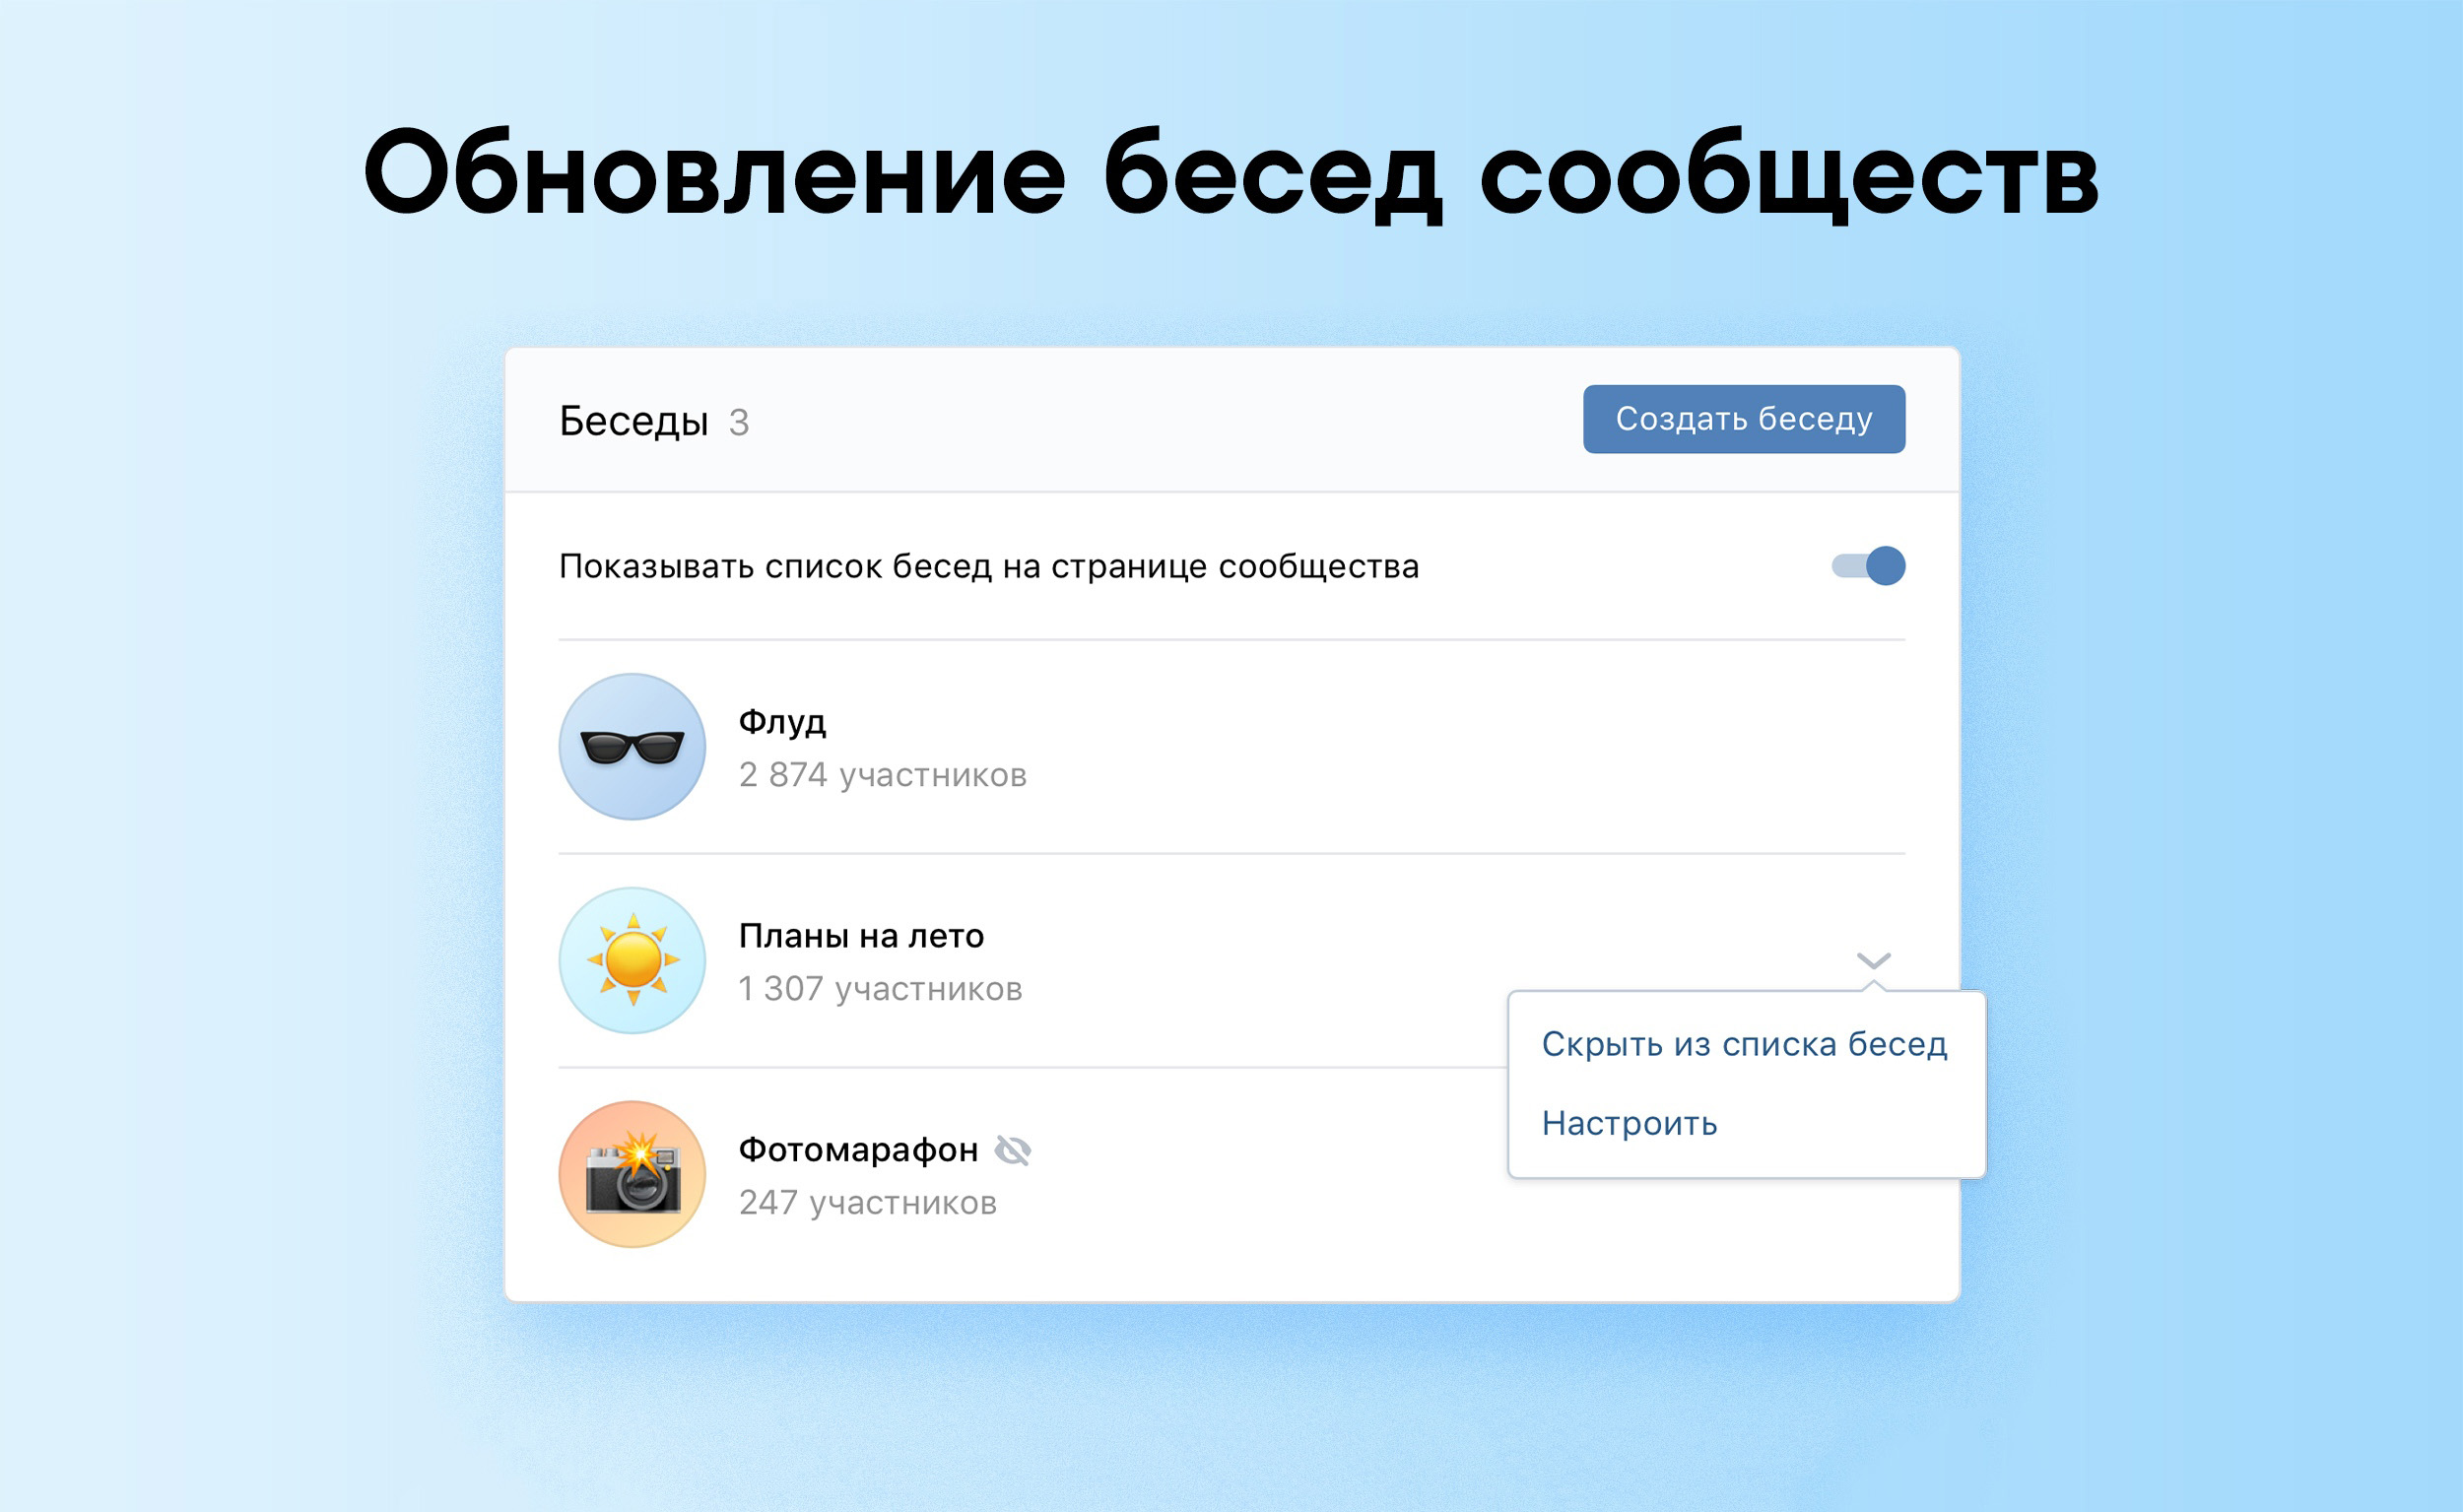 ВКонтакте обновила беседы сообществ 